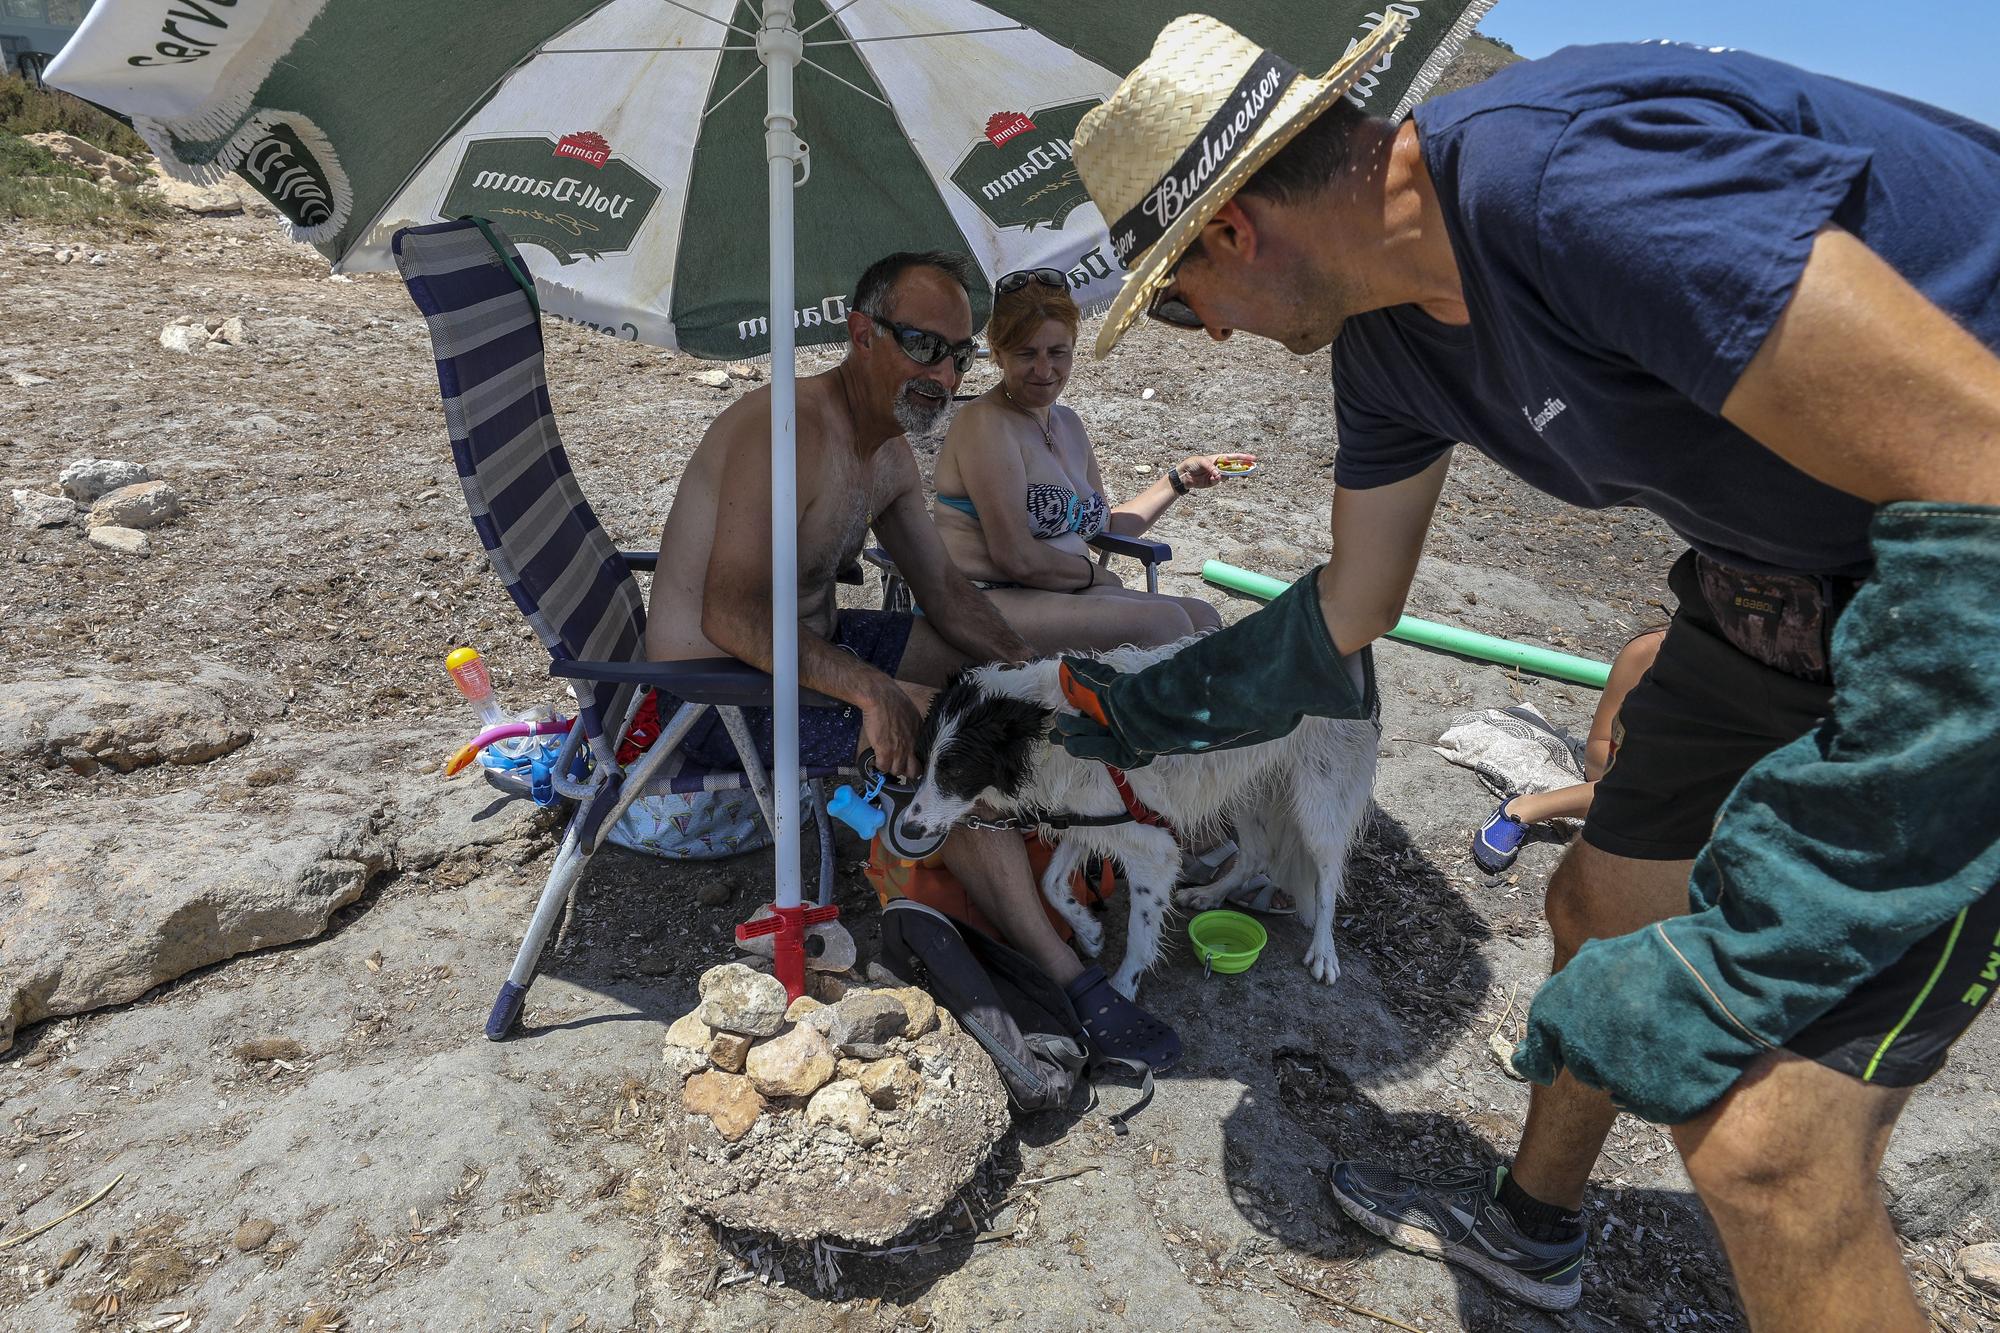 Cala dels gossets de Santa Pola: una playa con instinto animal